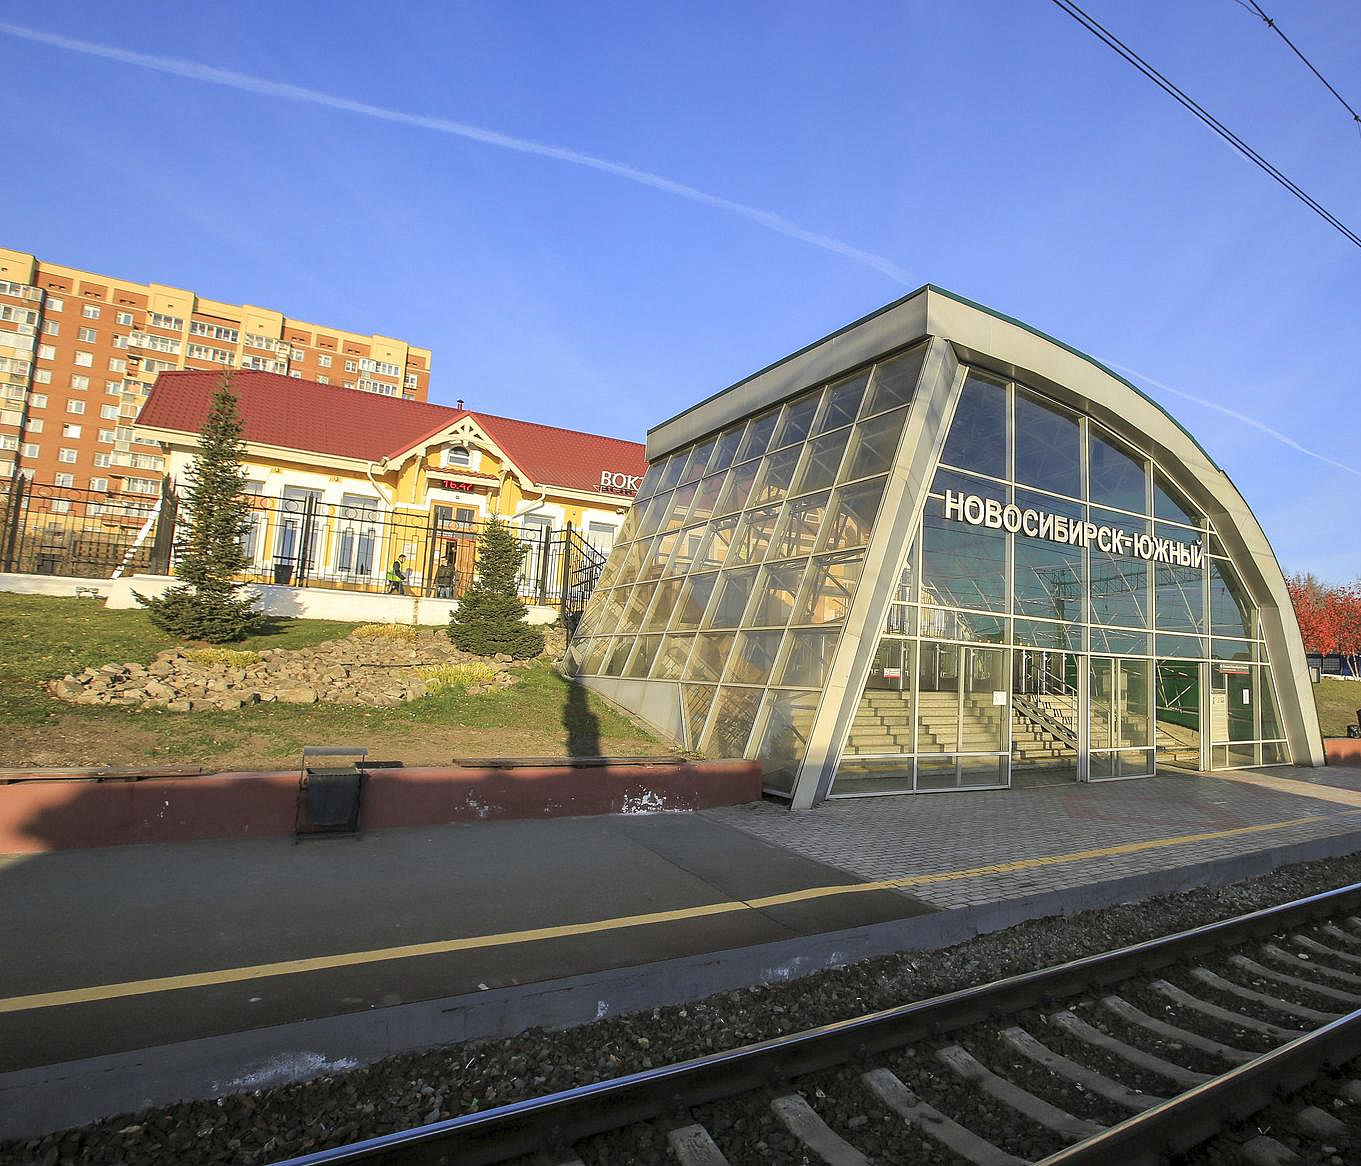 У вокзала Новосибирск-Южный отремонтируют лестницу и подпорную стенку